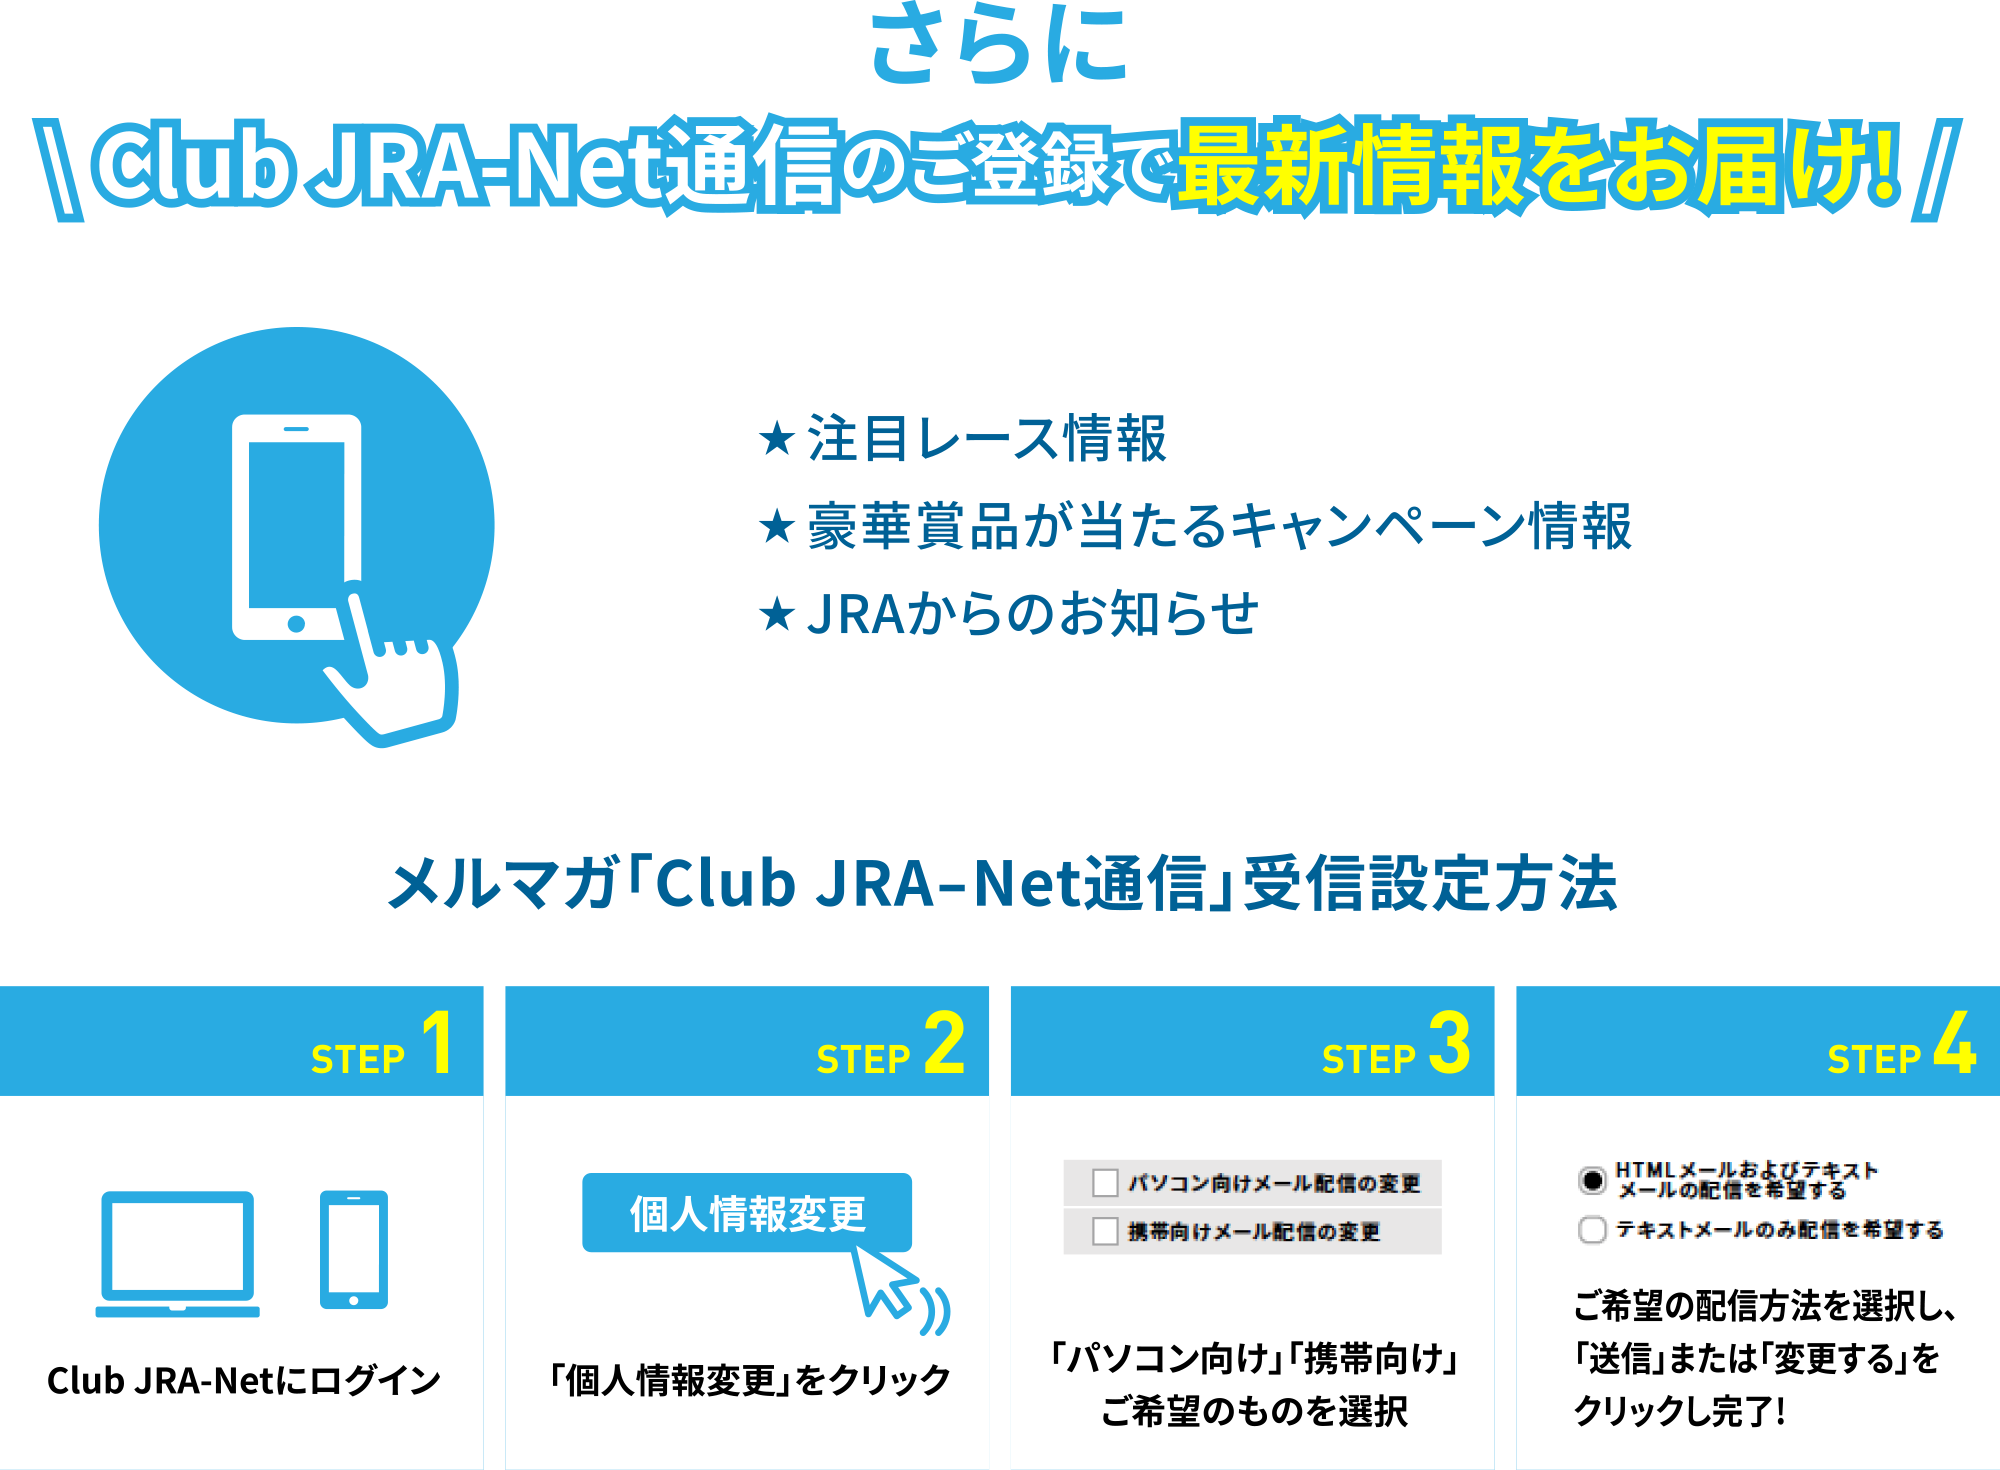 さらに Club JRA-Net通信のご登録で最新情報をお届け!
注目レース情報、豪華賞品が当たるキャンペーン情報、JRAからのお知らせ	メルマガ「Club JRA-Net通信」受信設定方法	